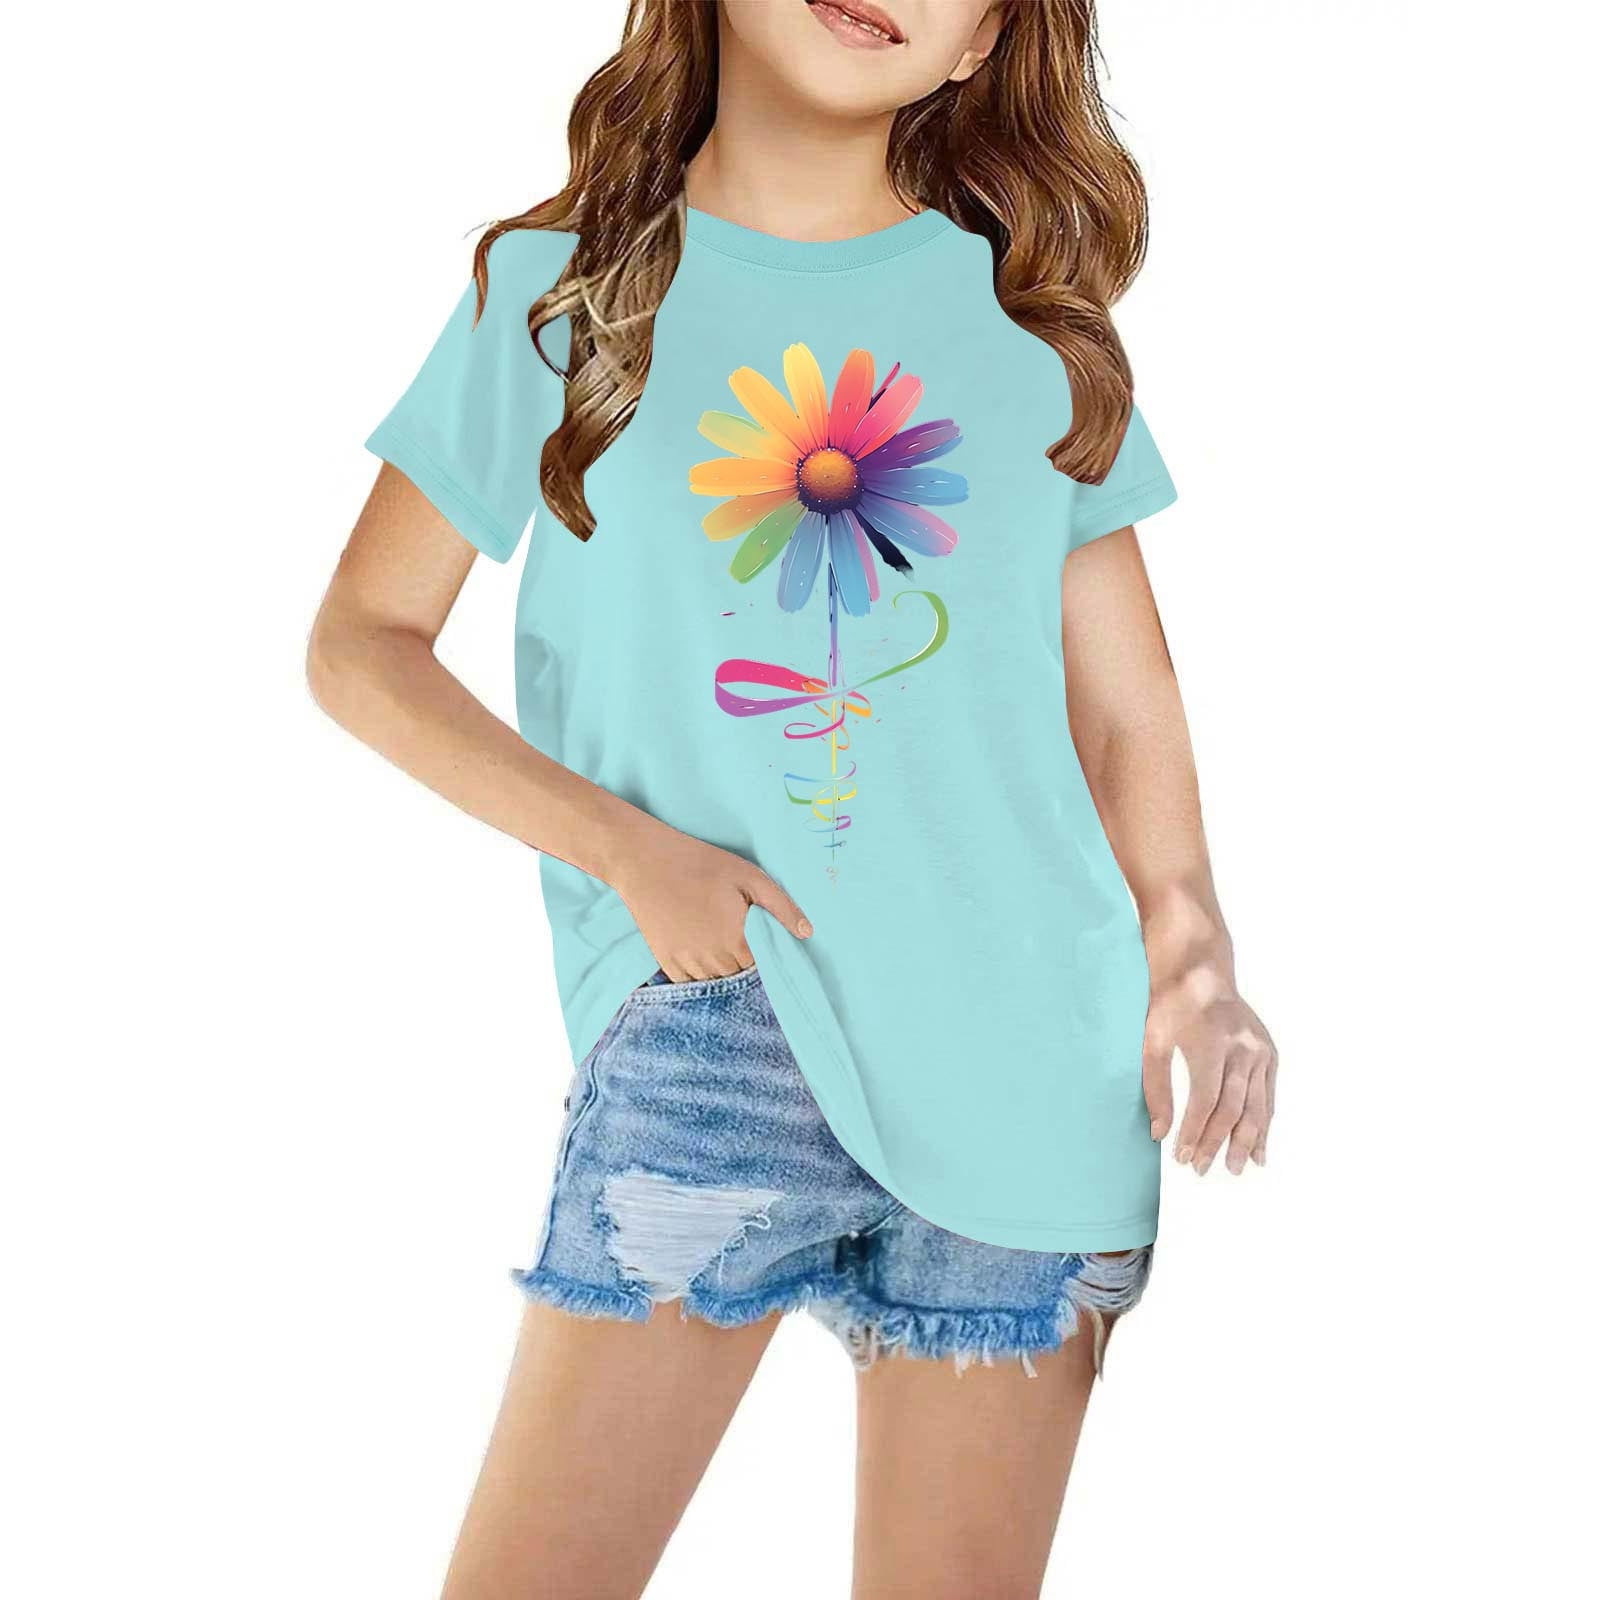 ATOGUTA Cute Shirts for Teen Boy and Girls Cotton T-shirt Cute Print ...